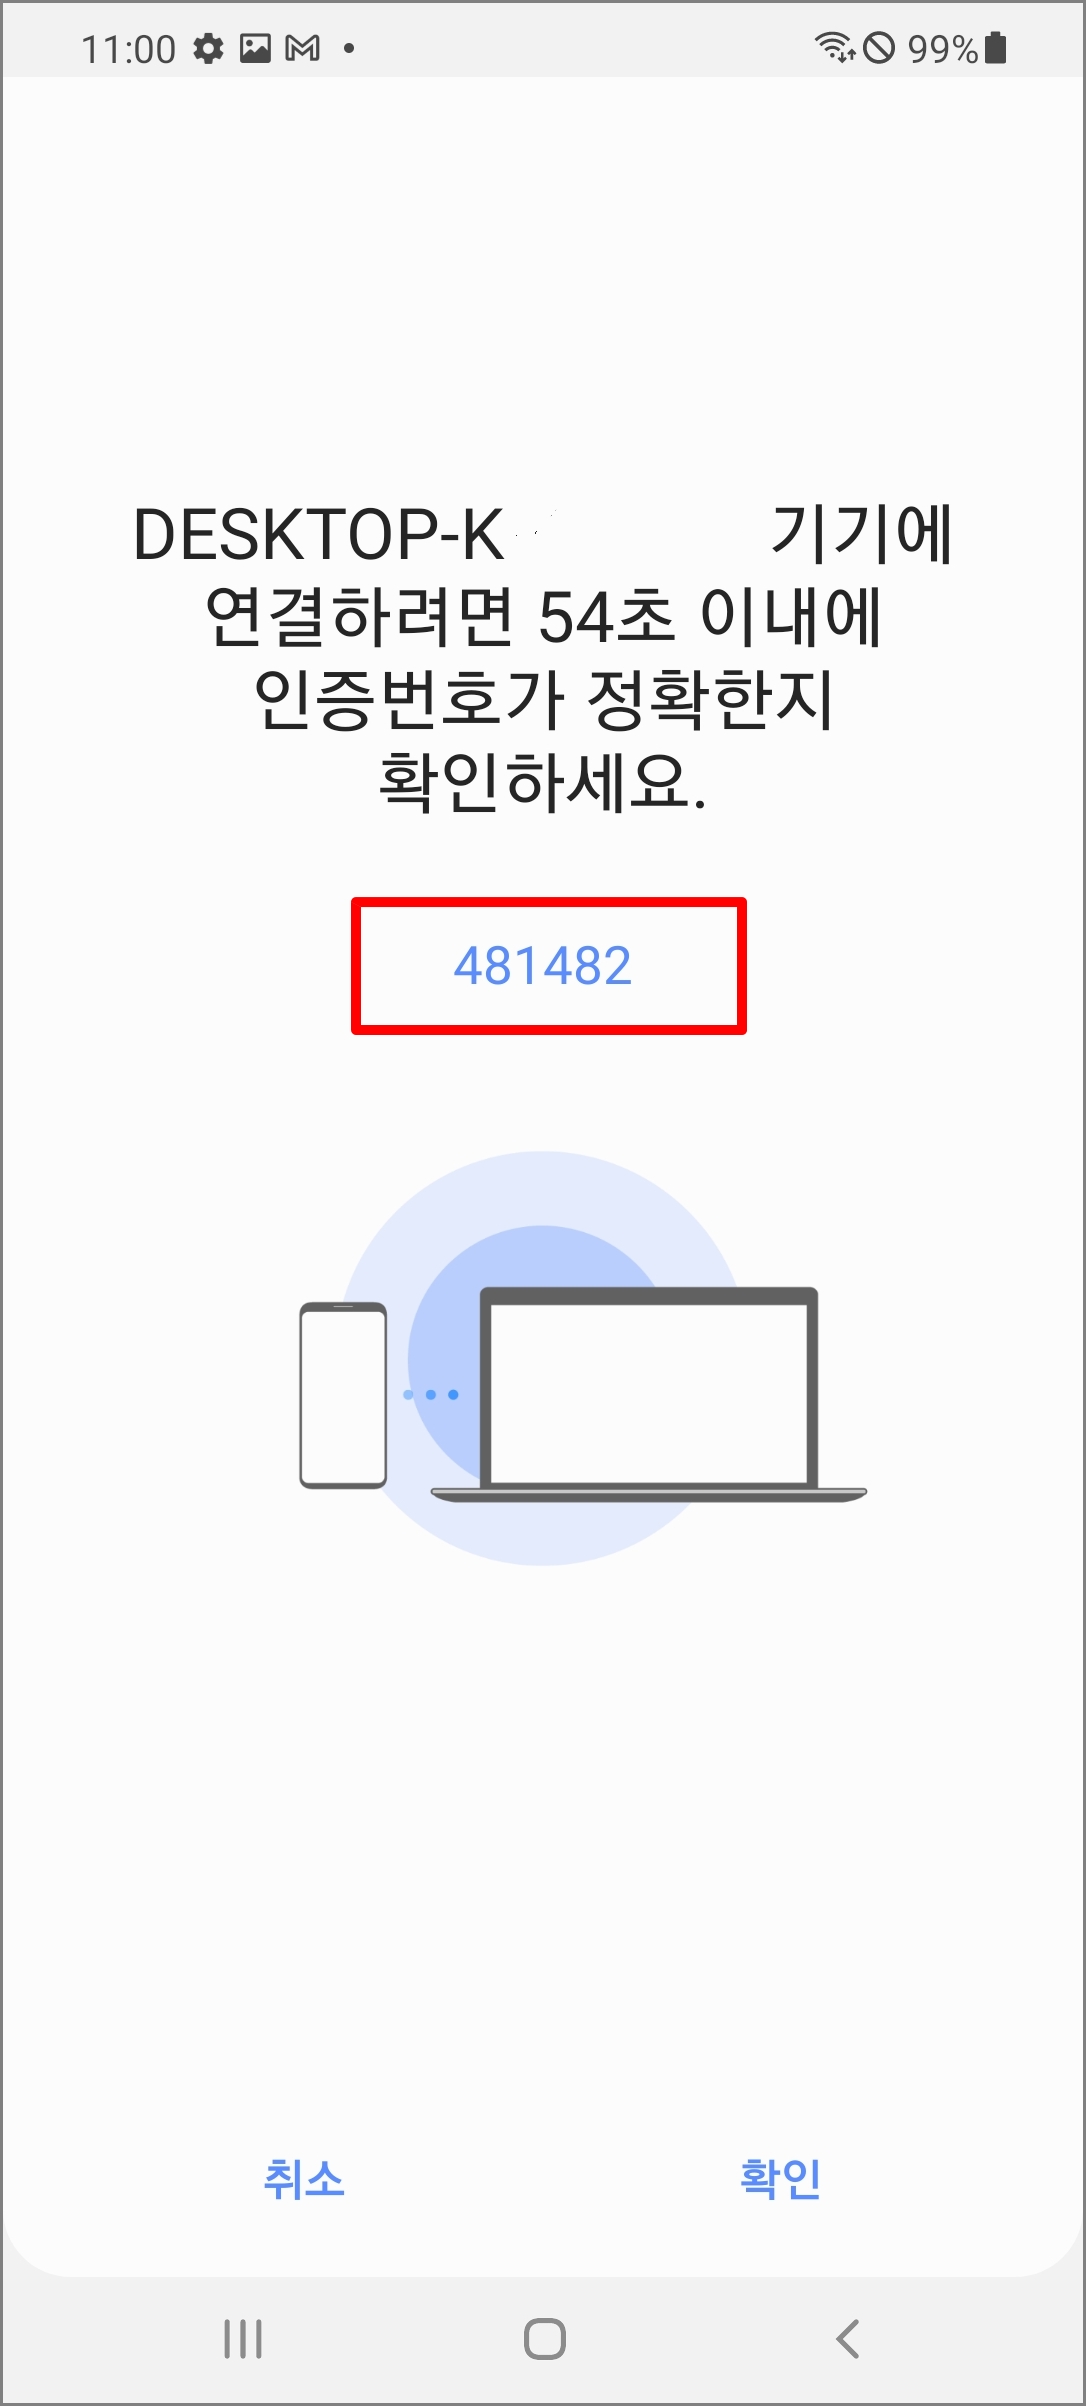 모바일 기기 Samsung Flow 화면, 인증번호와 제한 시간 안내가 텍스트로 표시된 모습, 인증번호에 하이라이트 표시중